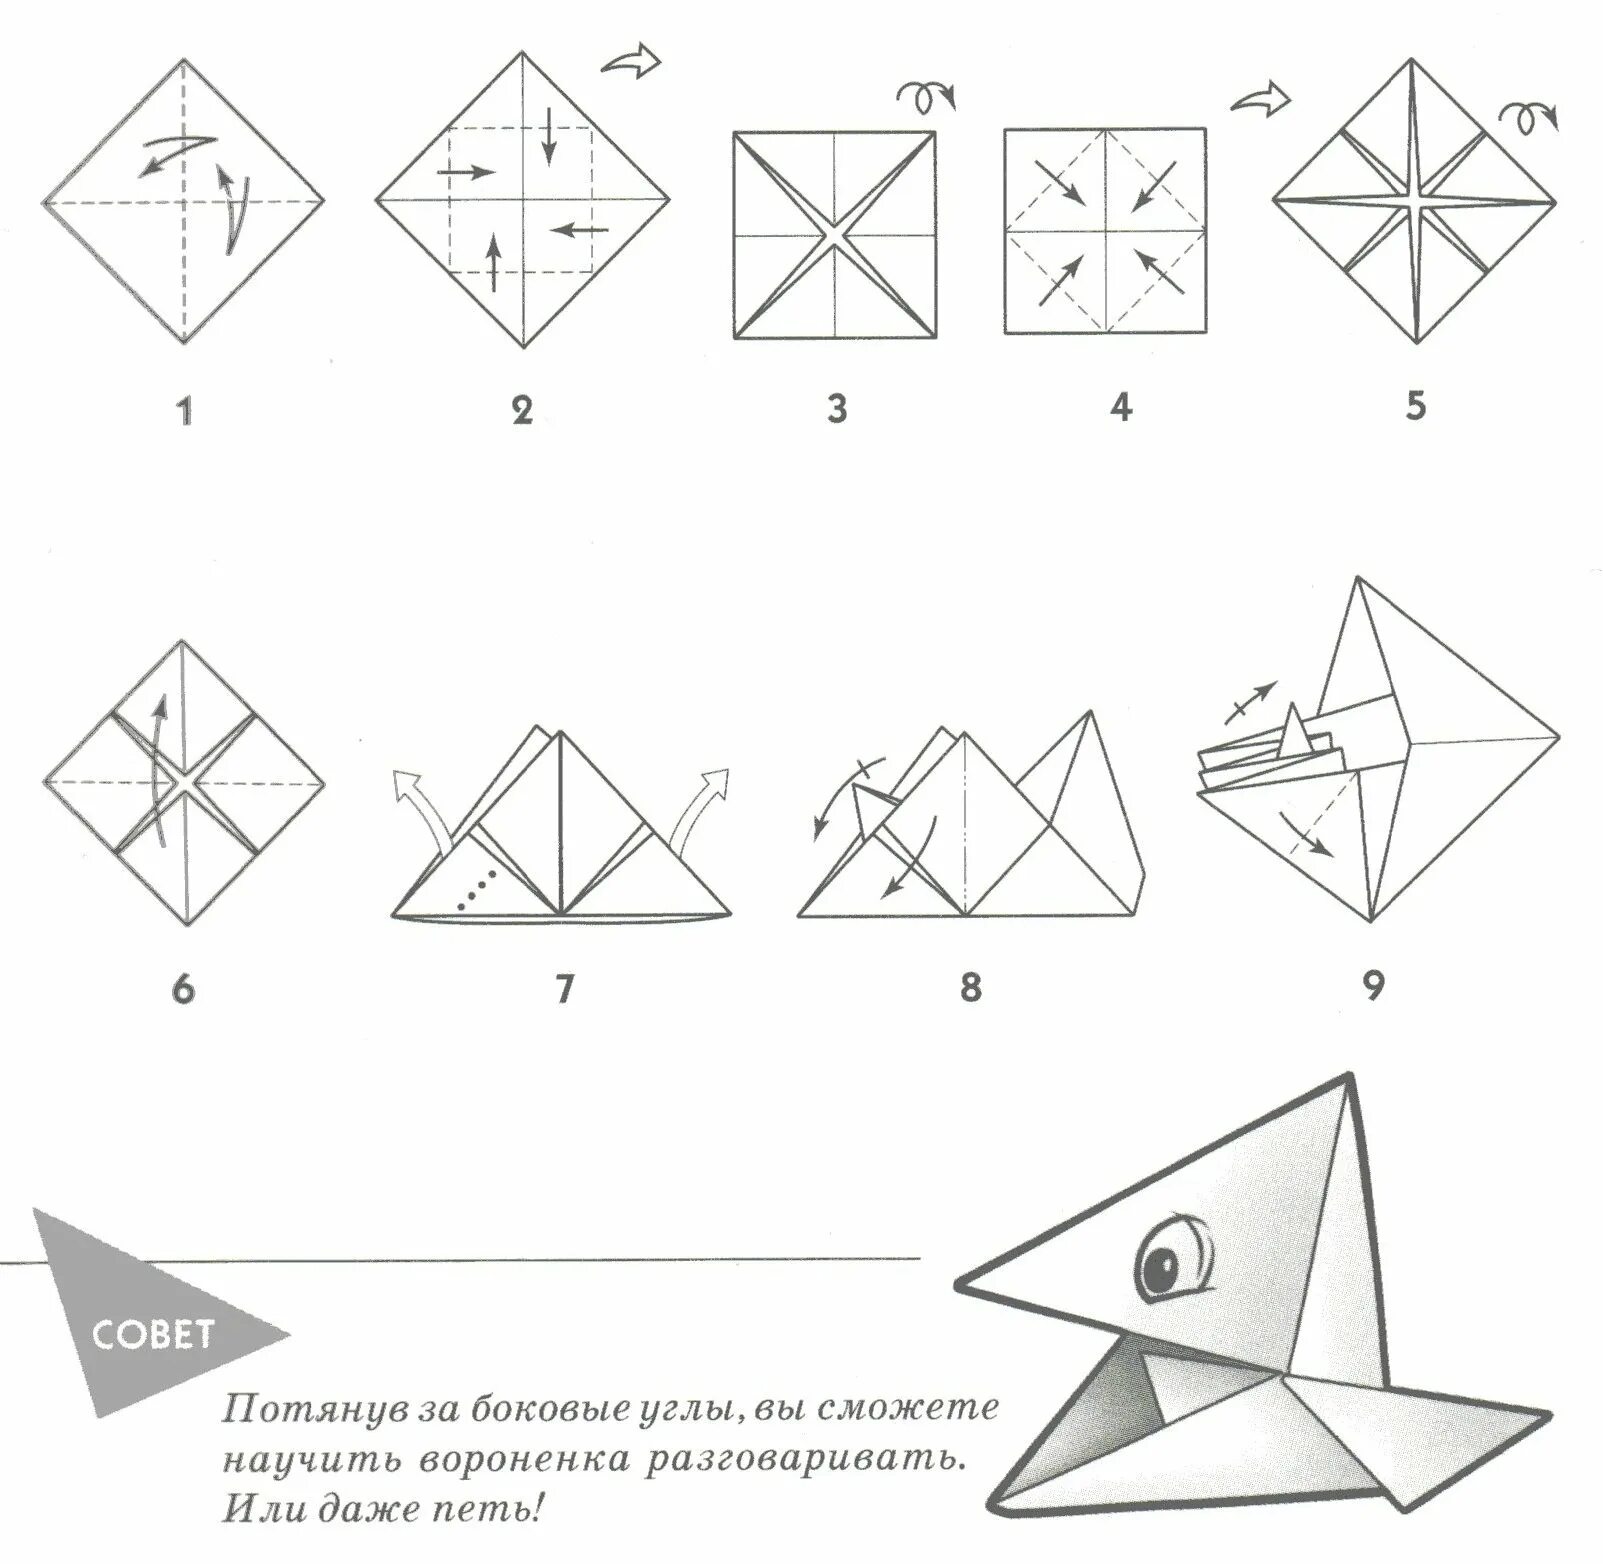 Складывание из бумаги. Поделка оригами из бумаги для начинающих пошагово. Оригами из бумаги для начинающих схемы пошагово. Поделки из бумаги схема складывания. Оригами из бумаги без клея схемы.